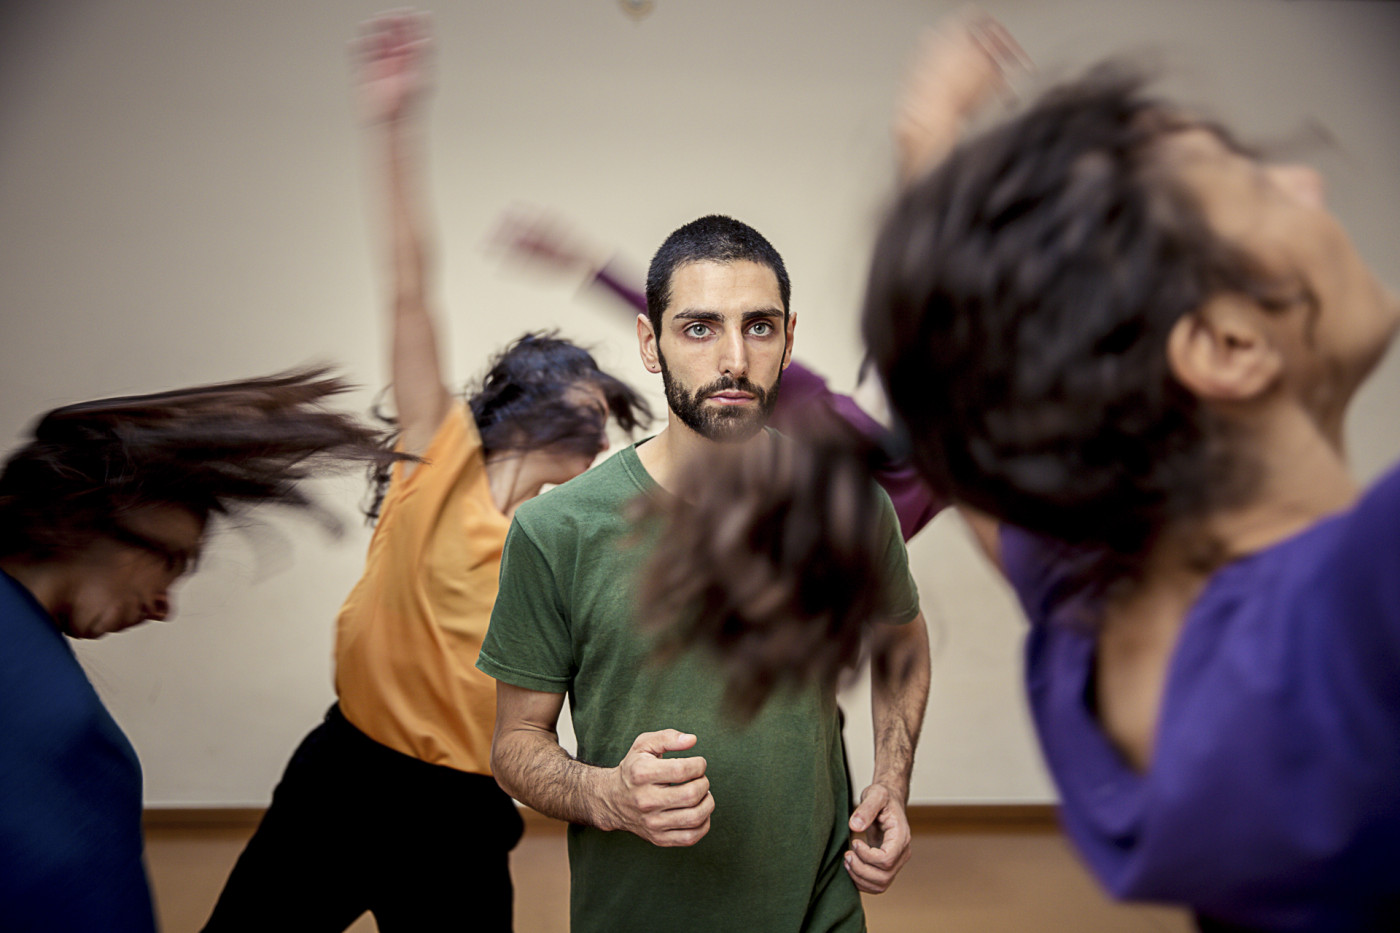 "La danza della realtà" ispirata all’universo di Alejandro Jodorowsky